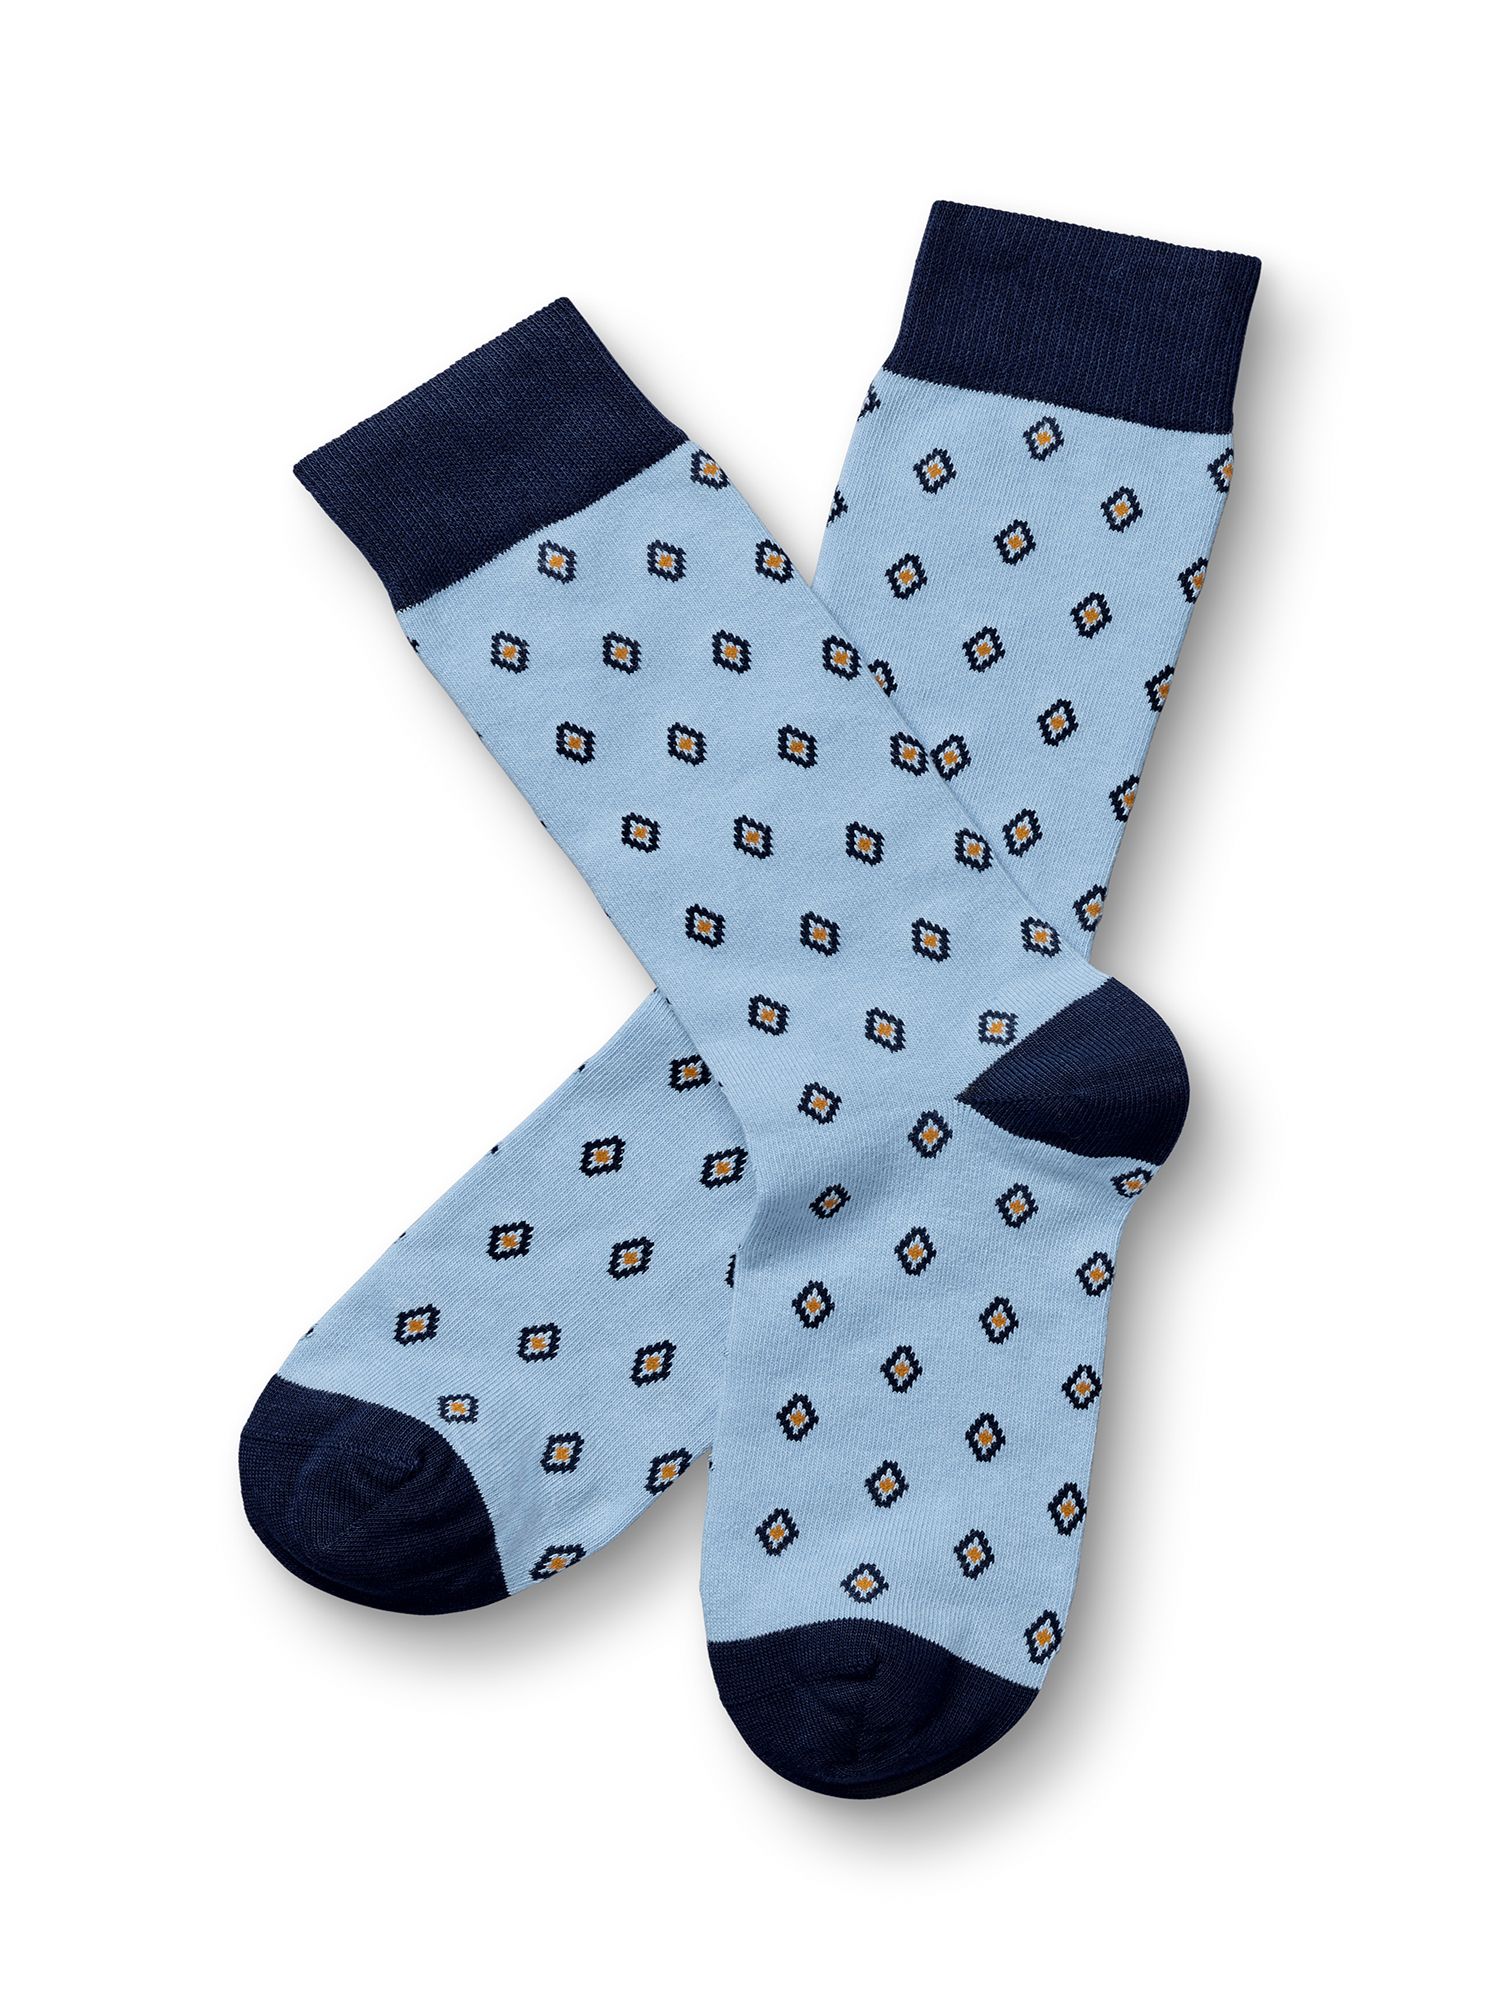 Buy Charles Tyrwhitt Geometric Socks, Sky Blue Online at johnlewis.com